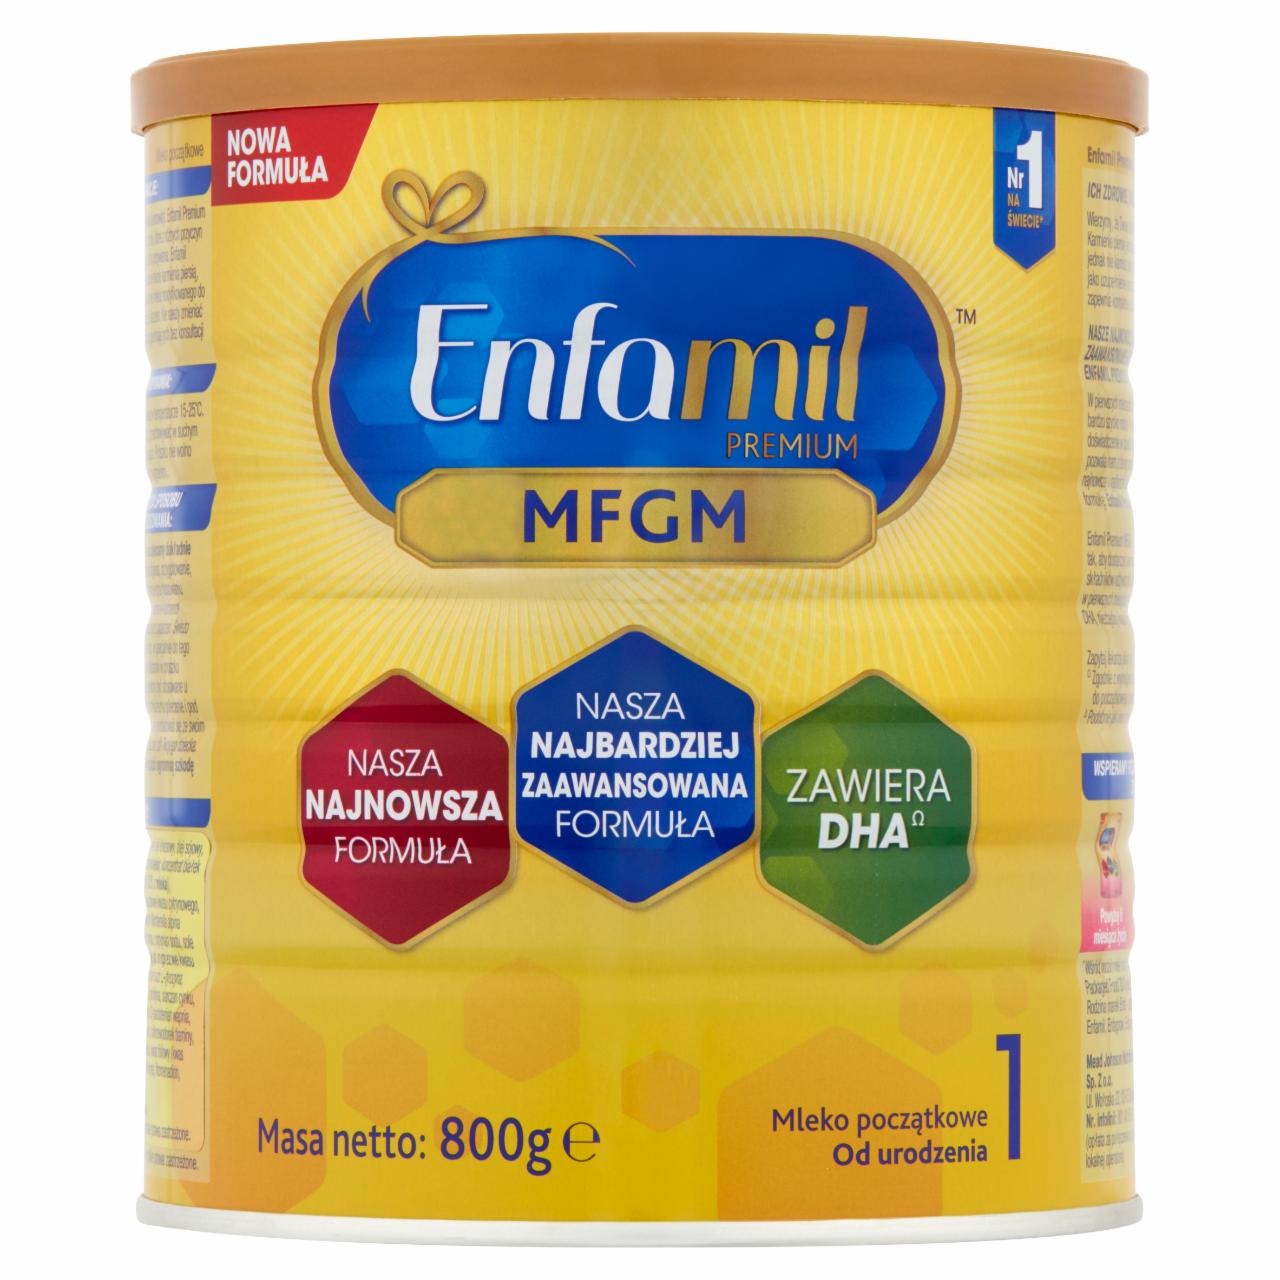 Zdjęcia - Enfamil Premium MFGM 1 Mleko początkowe od urodzenia 800 g